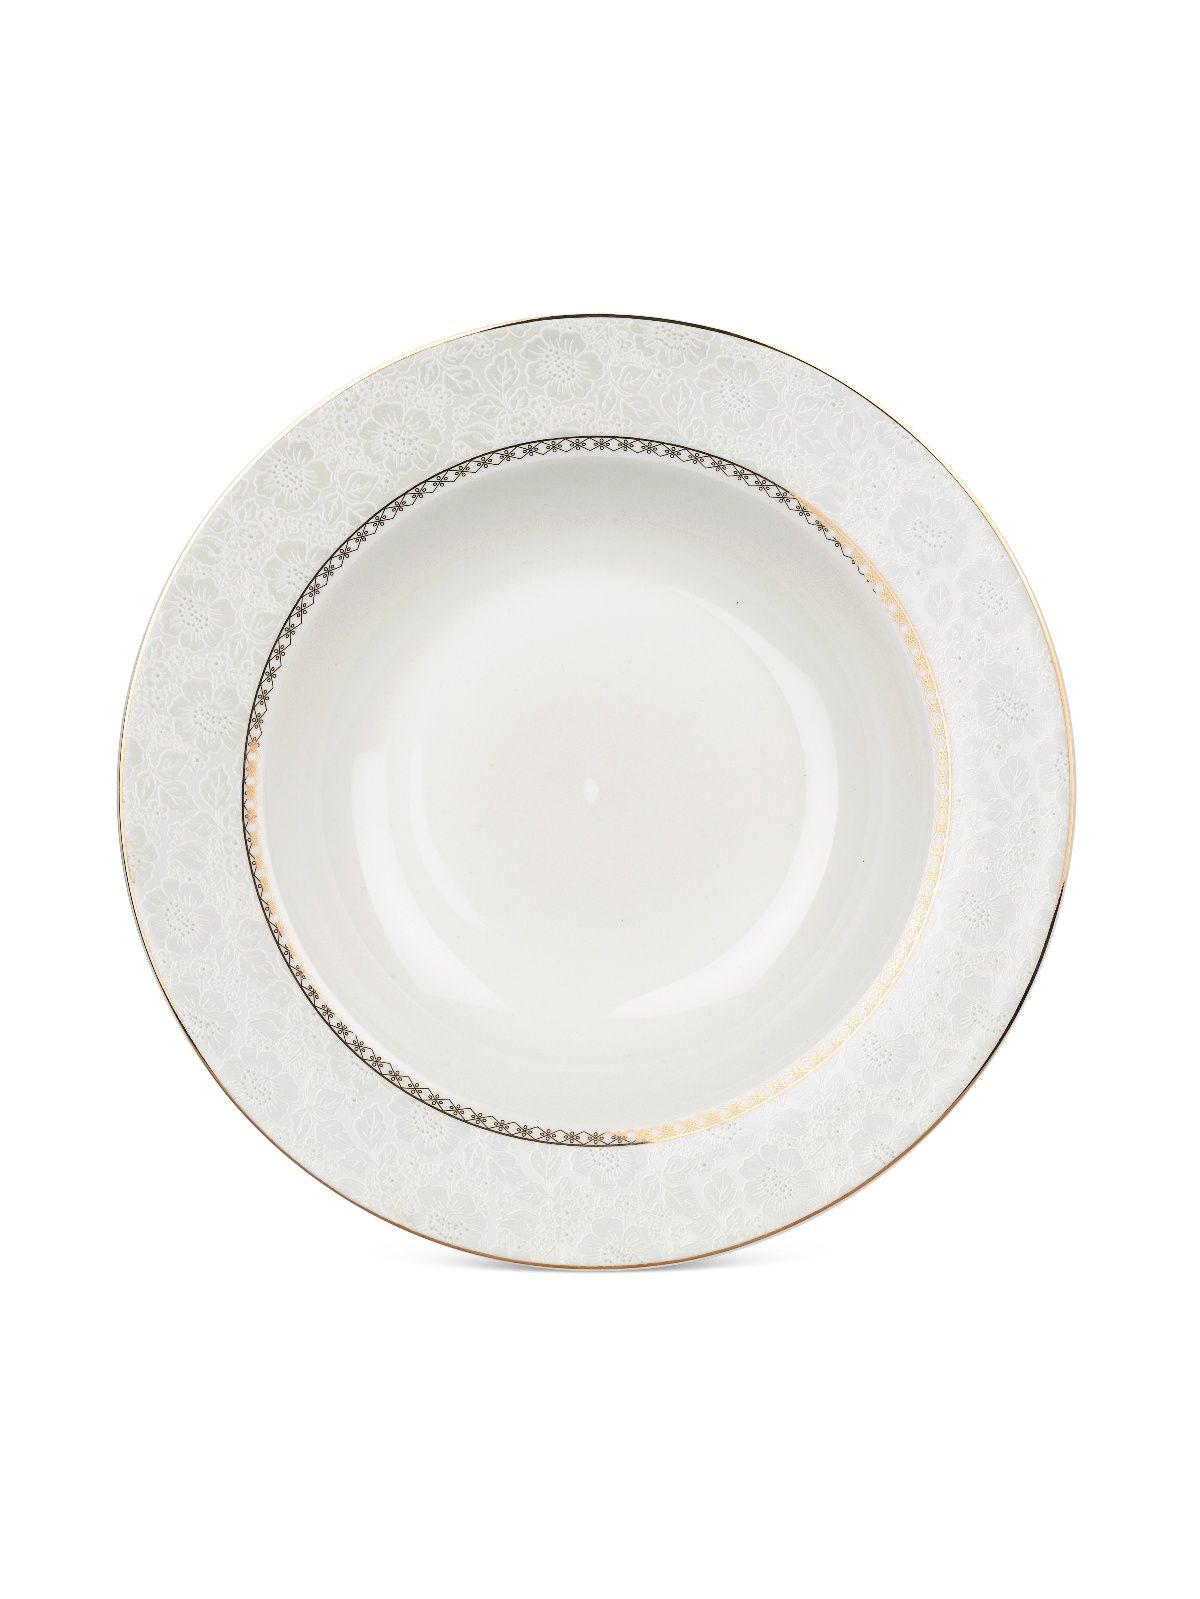 Тарелка суповая ELEGANCE 21.5см FIORETTA TDP612 тарелка суповая elegance 21 5см fioretta tdp612